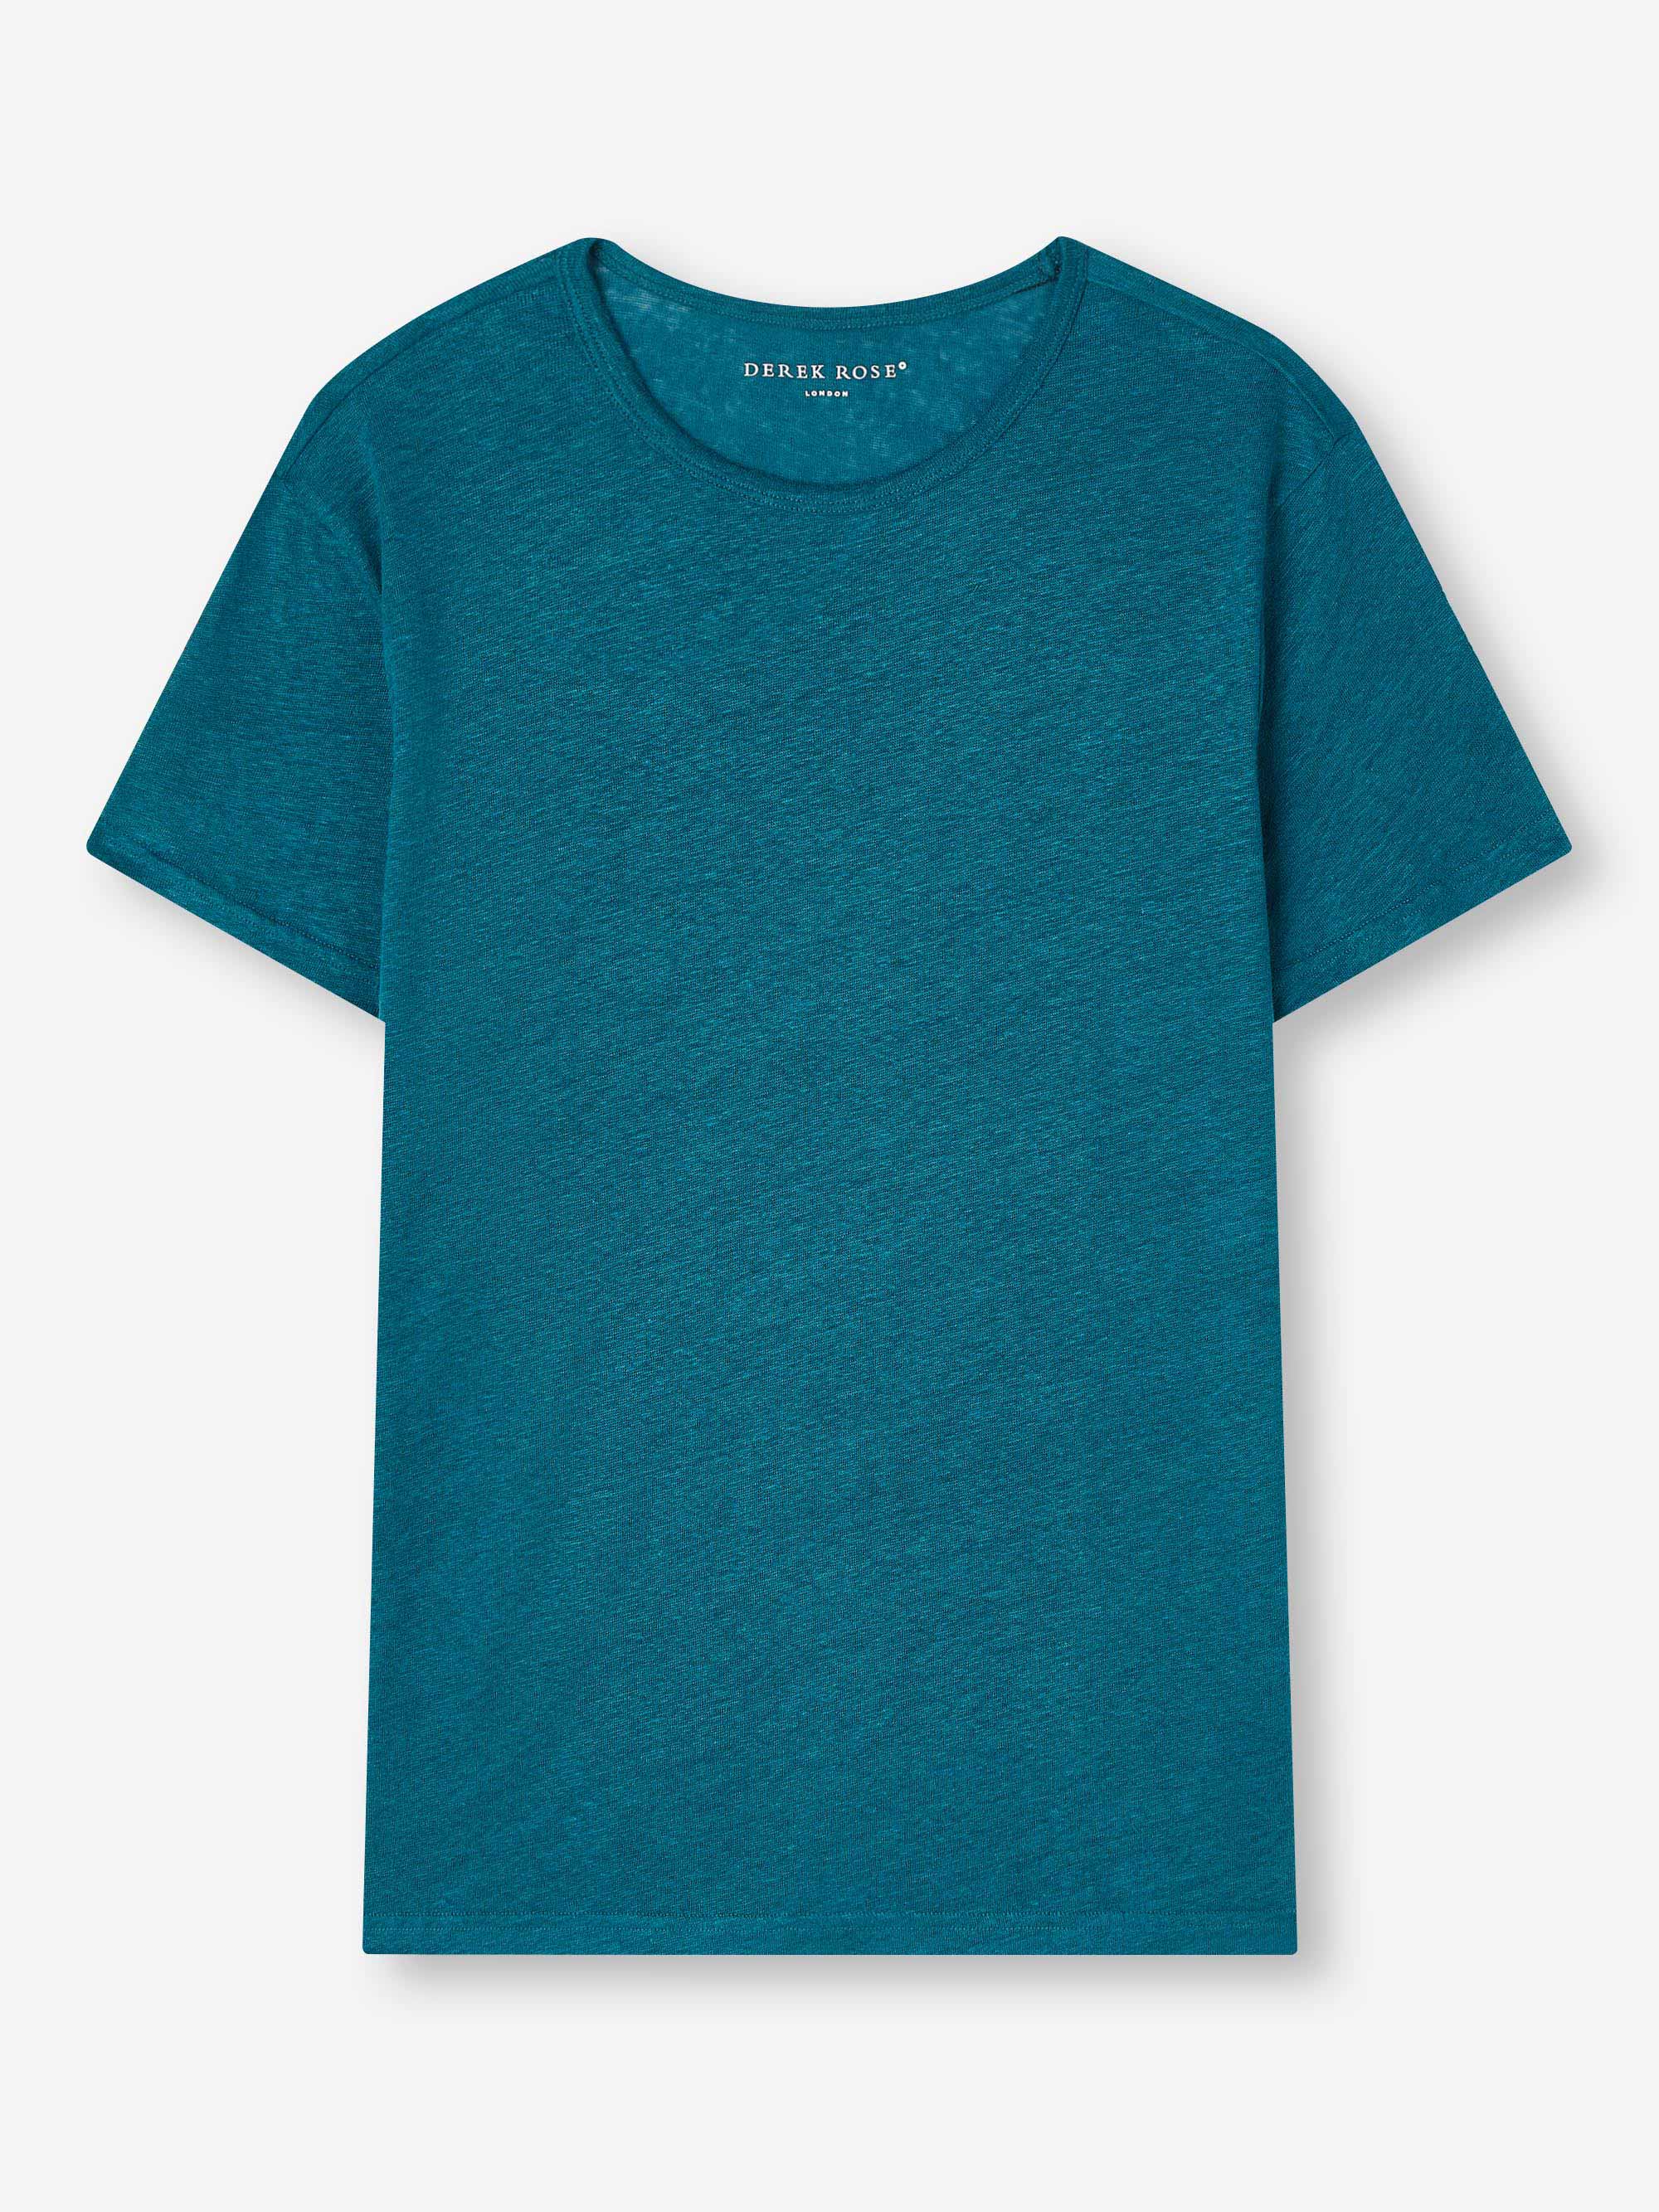 Men's T-Shirt Jordan Linen Teal